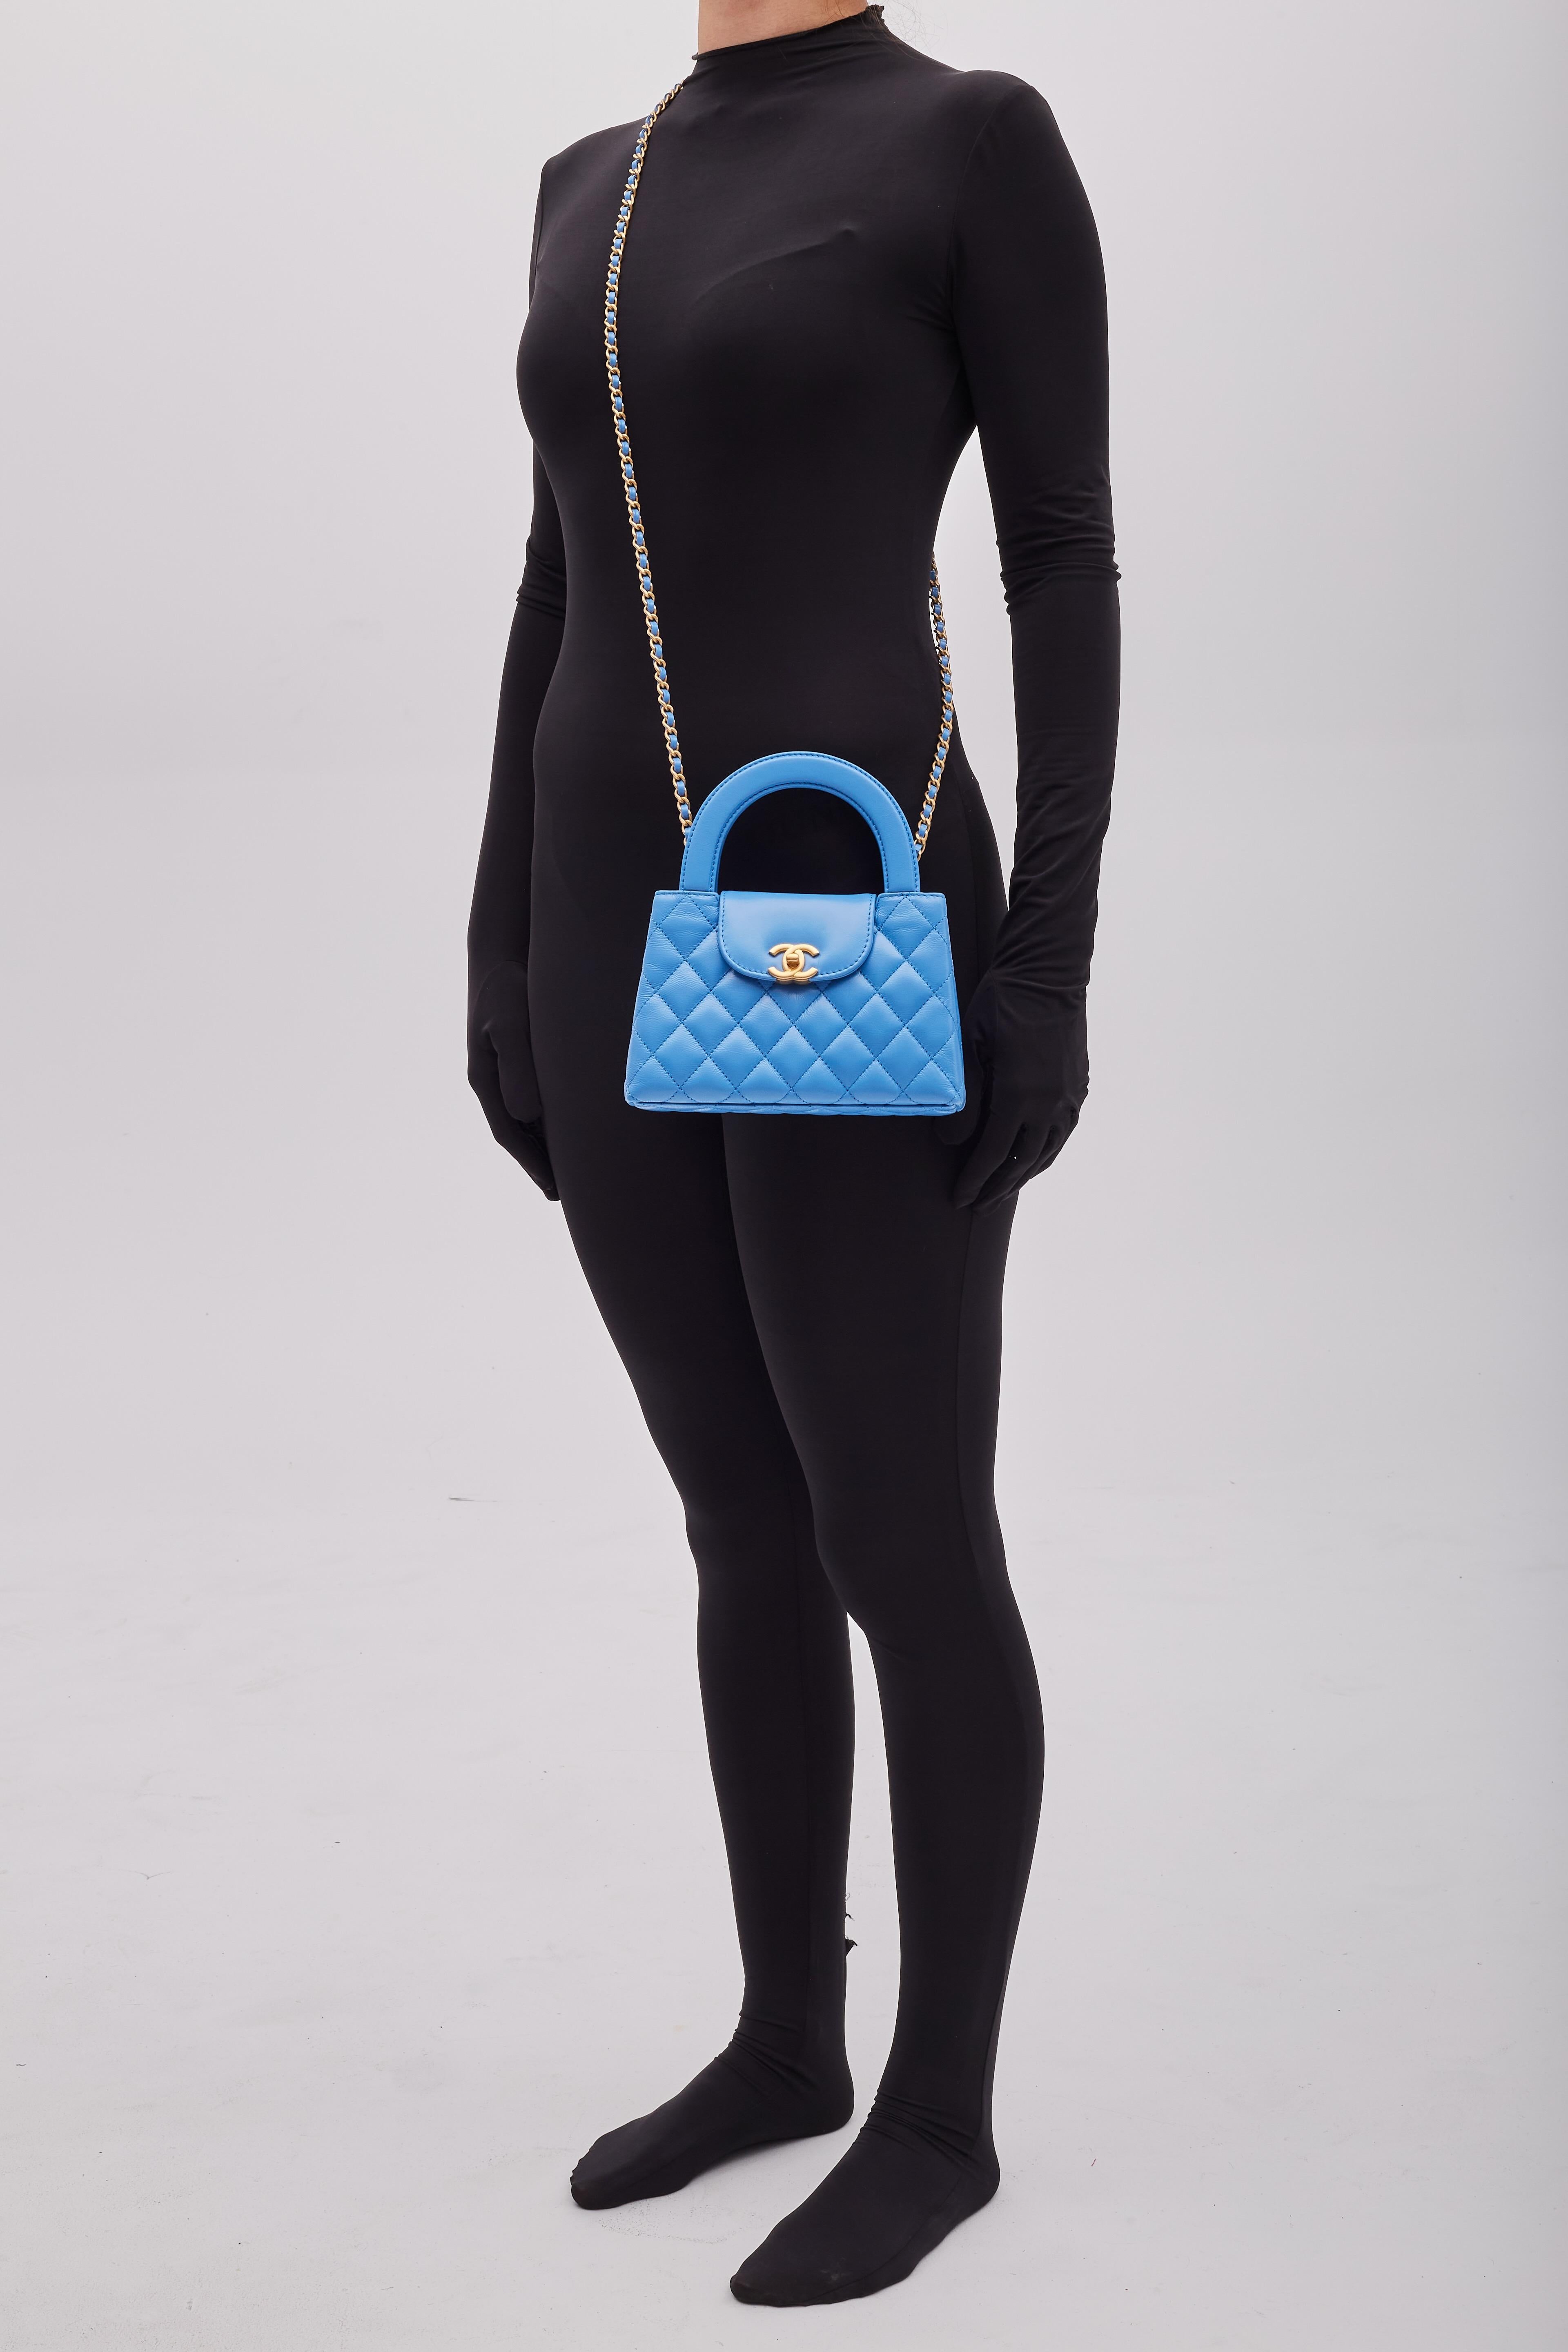 Sac à main Chanel. Issue de la Collection automne/hiver 2004 de Virginie Viard. Ce mini sac est une version revisitée d'un sac Chanel d'époque, avec une longue bandoulière en chaîne. Ce sac à double anse est matelassé en cuir de veau vieilli bleu,